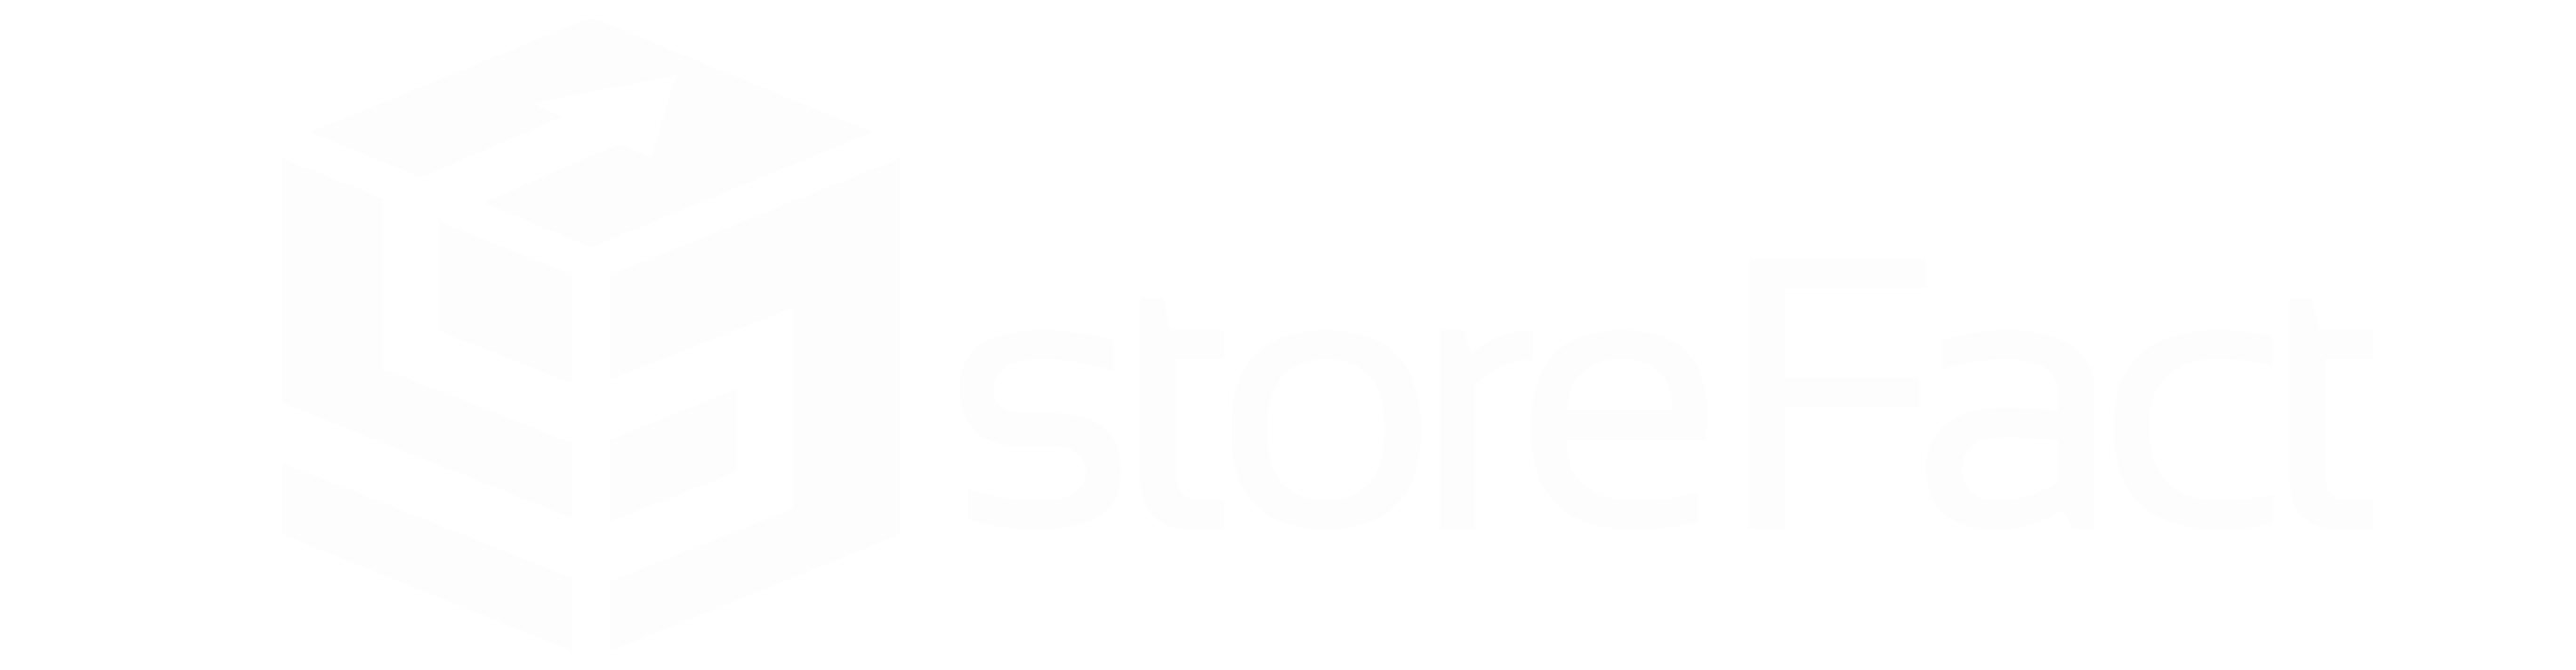 StoreFact logo